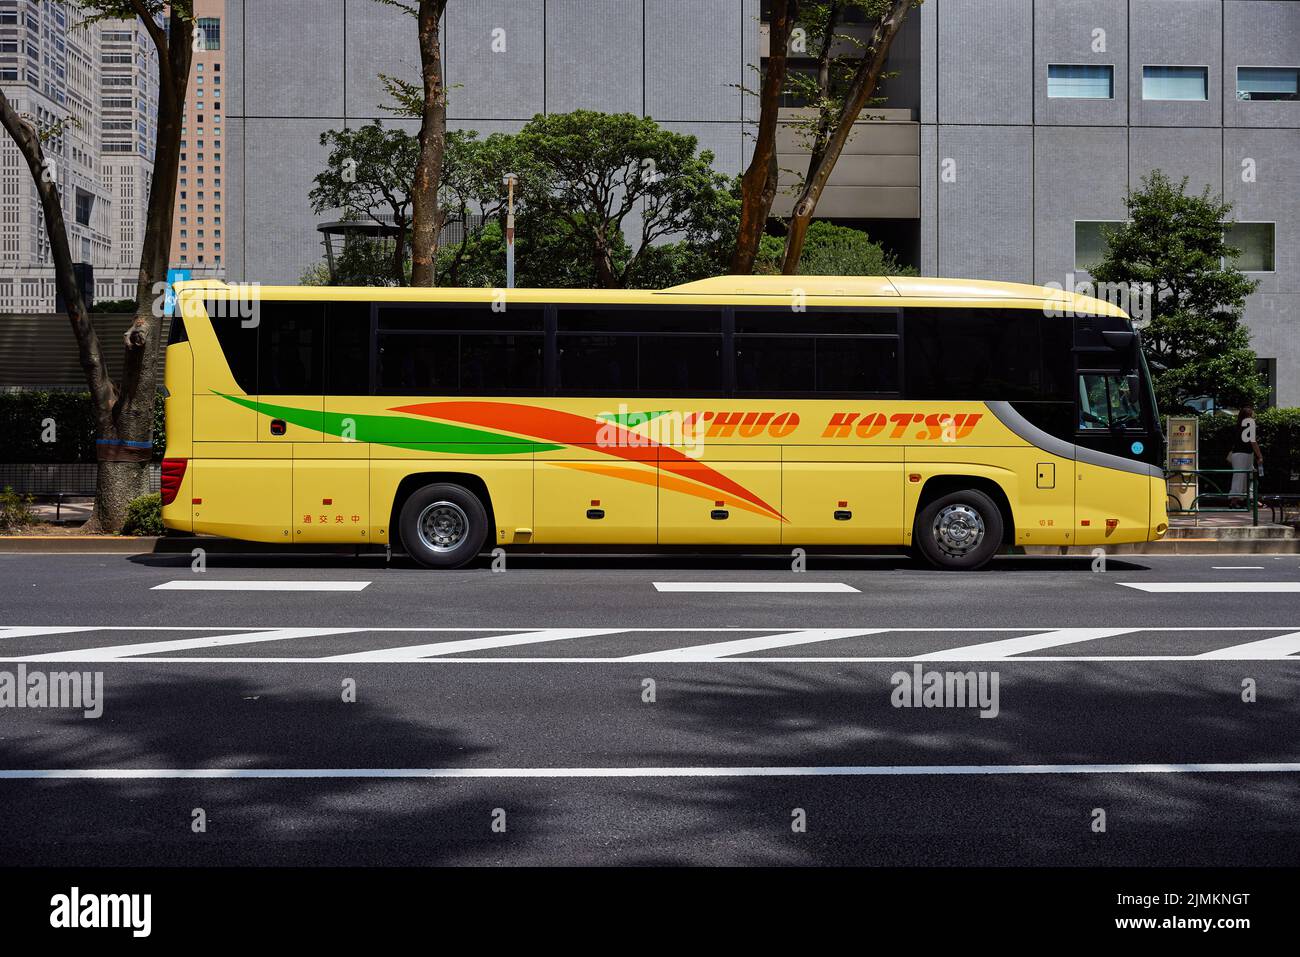 Chuo Kotsu, yellow bus; Shinjuku, Tokyo, Japan Stock Photo